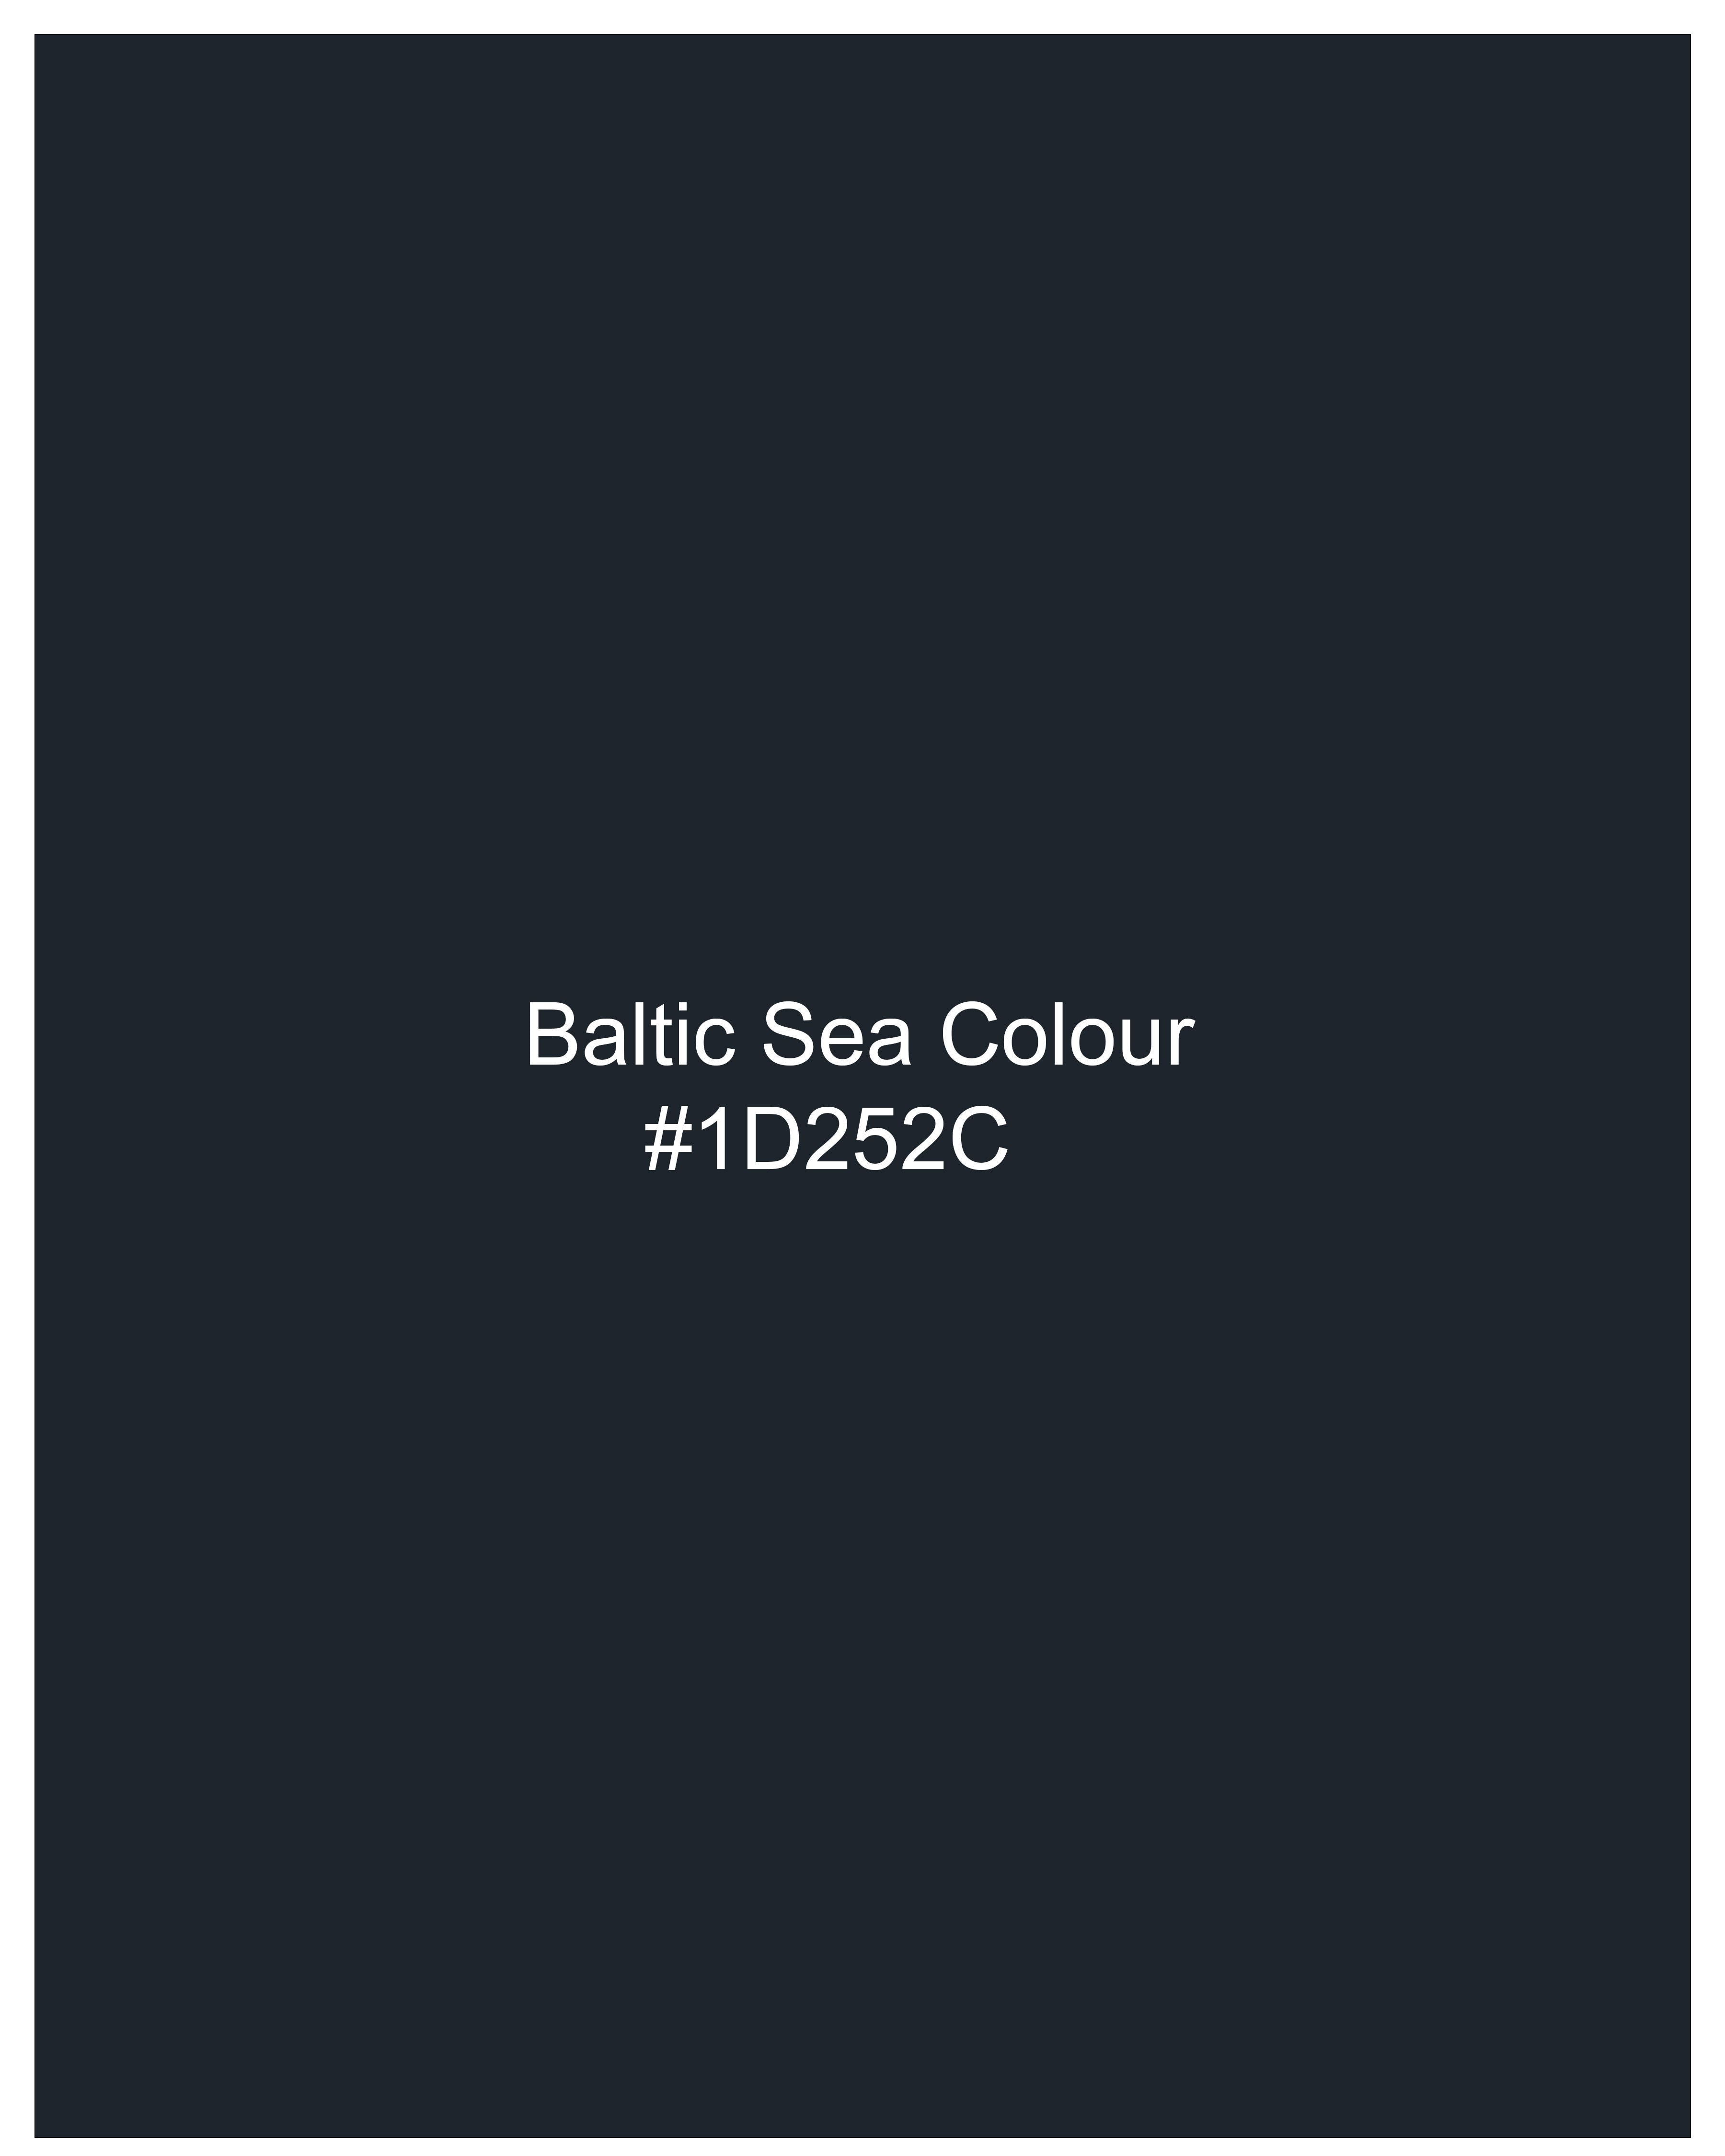 Baltic Sea Blue Premium Cotton Pants T2478-28, T2478-30, T2478-32, T2478-34, T2478-36, T2478-38, T2478-40, T2478-42, T2478-44